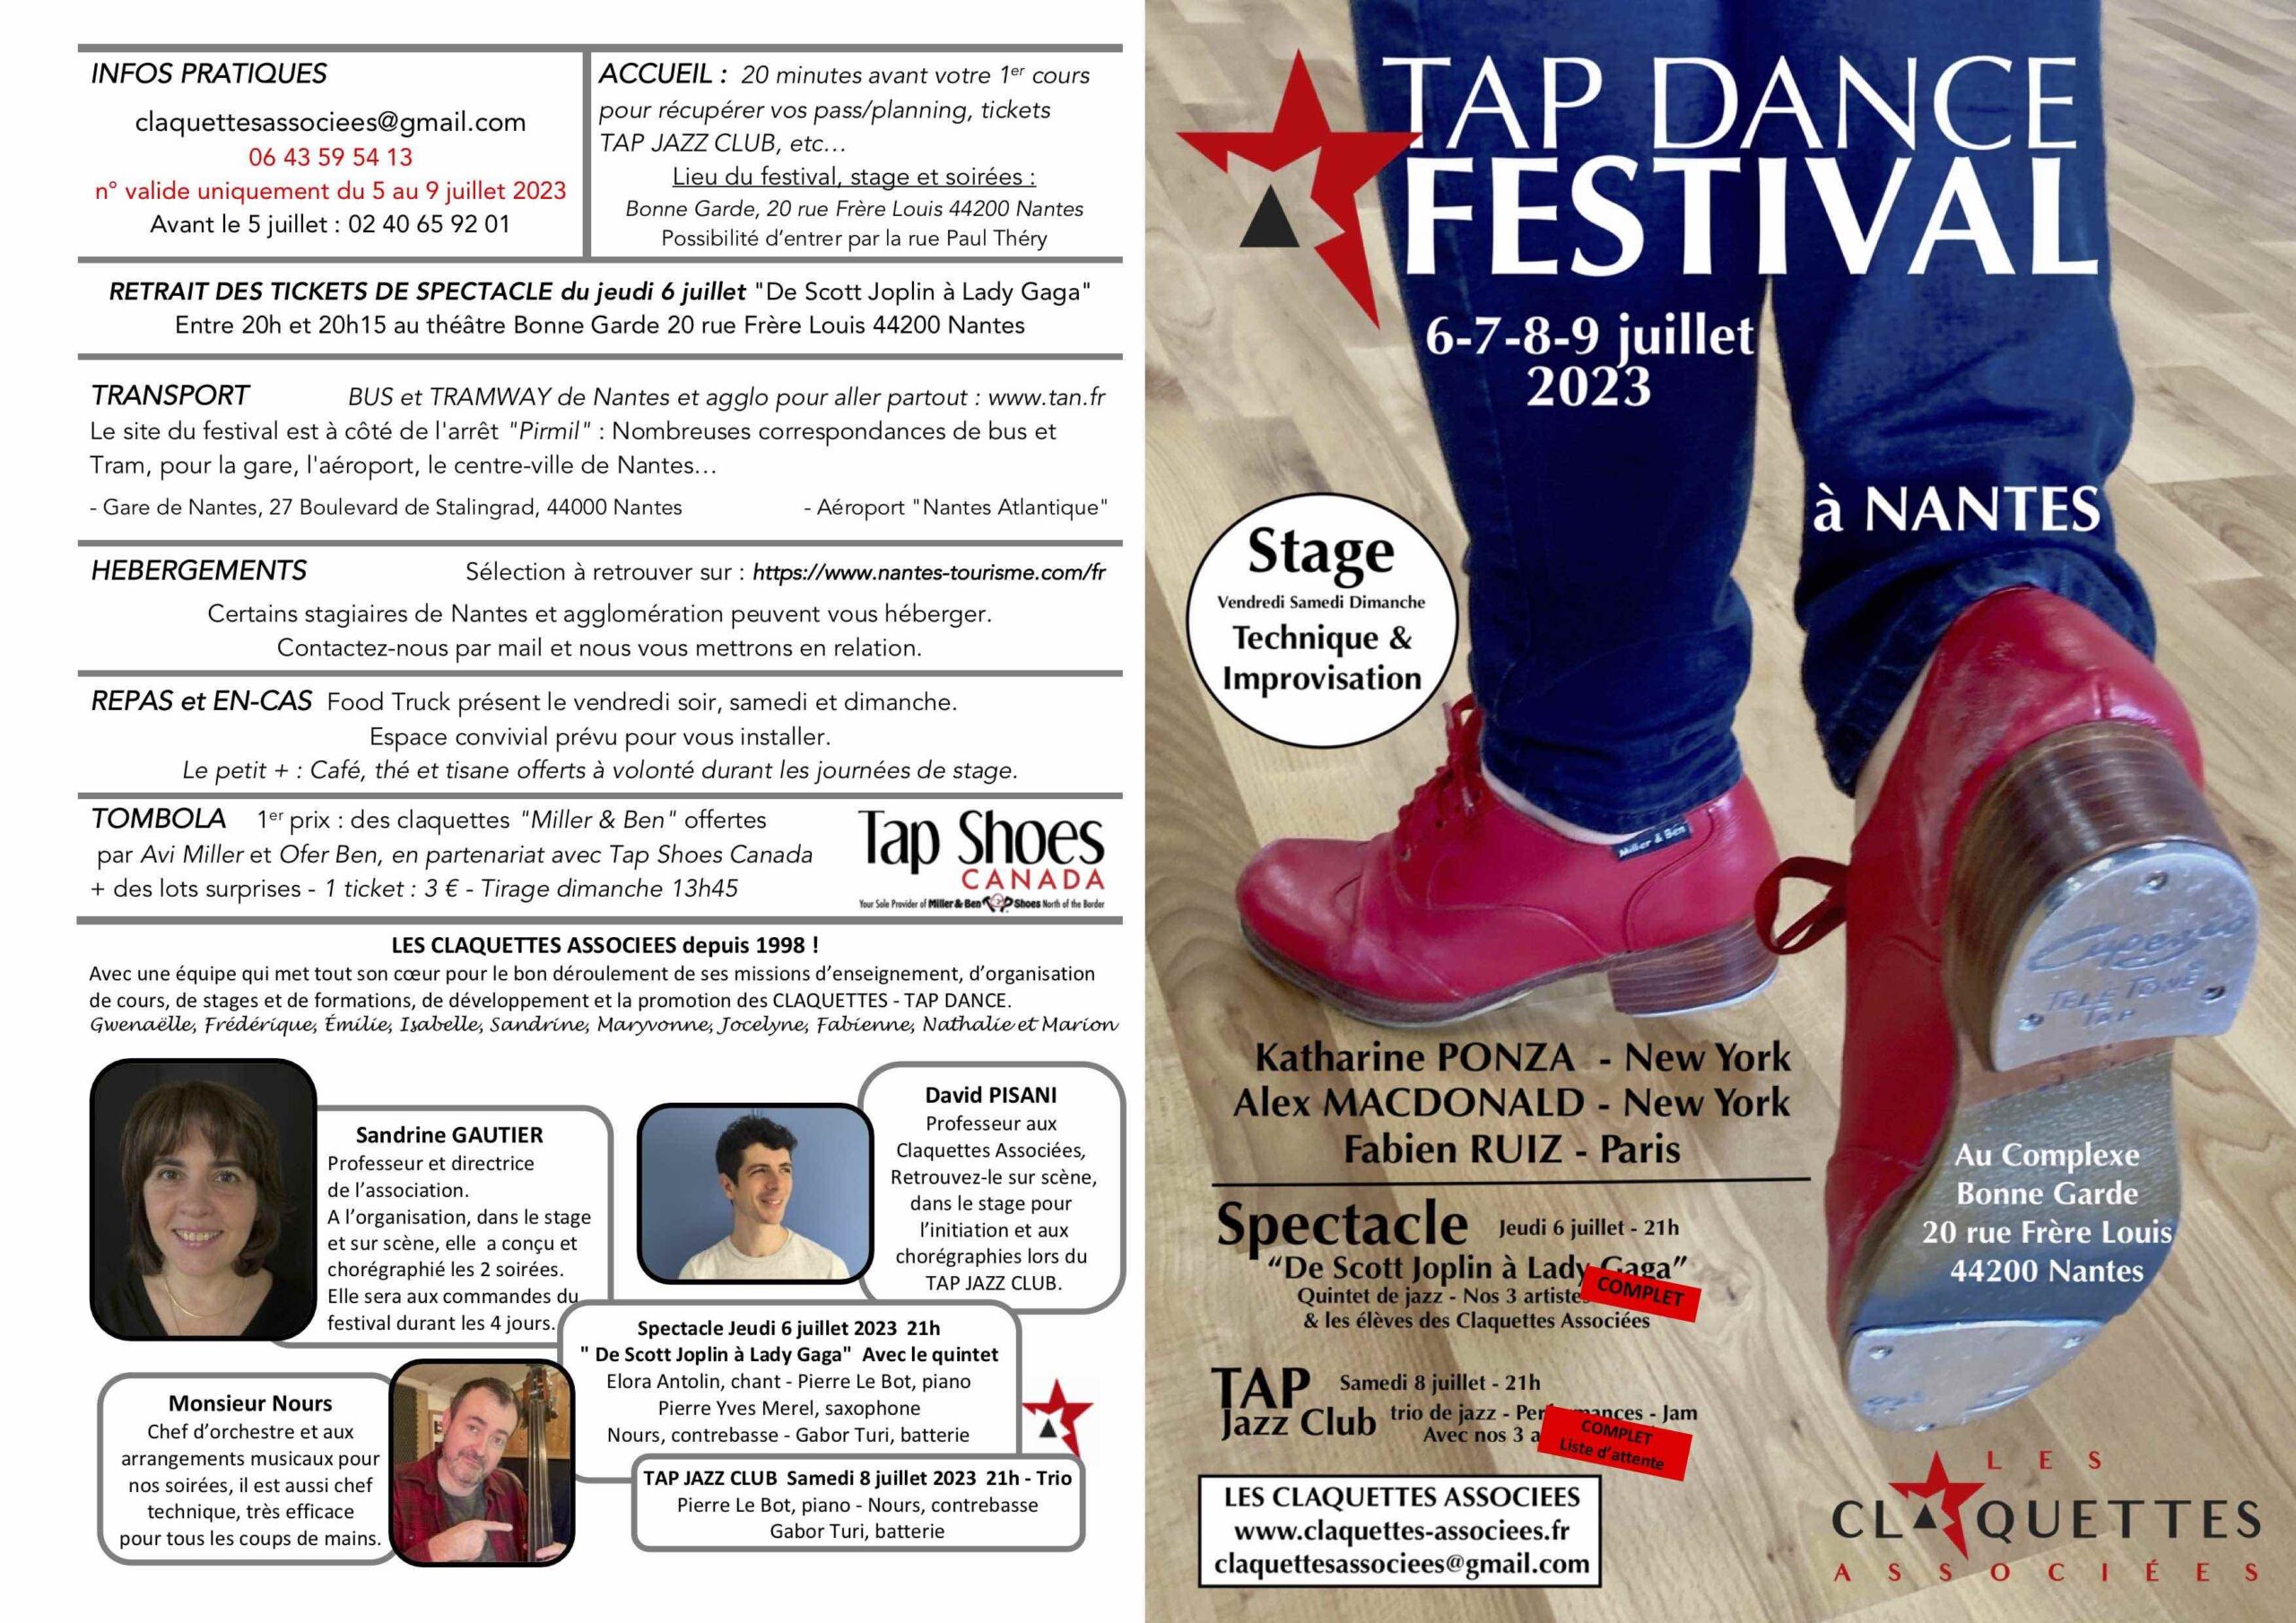 Infos pratiques-Tap Dance festival du 6 au 9 juillet 2023 à Nantes organisé par les claquettes associées-Attention Club du 8 juillet complet